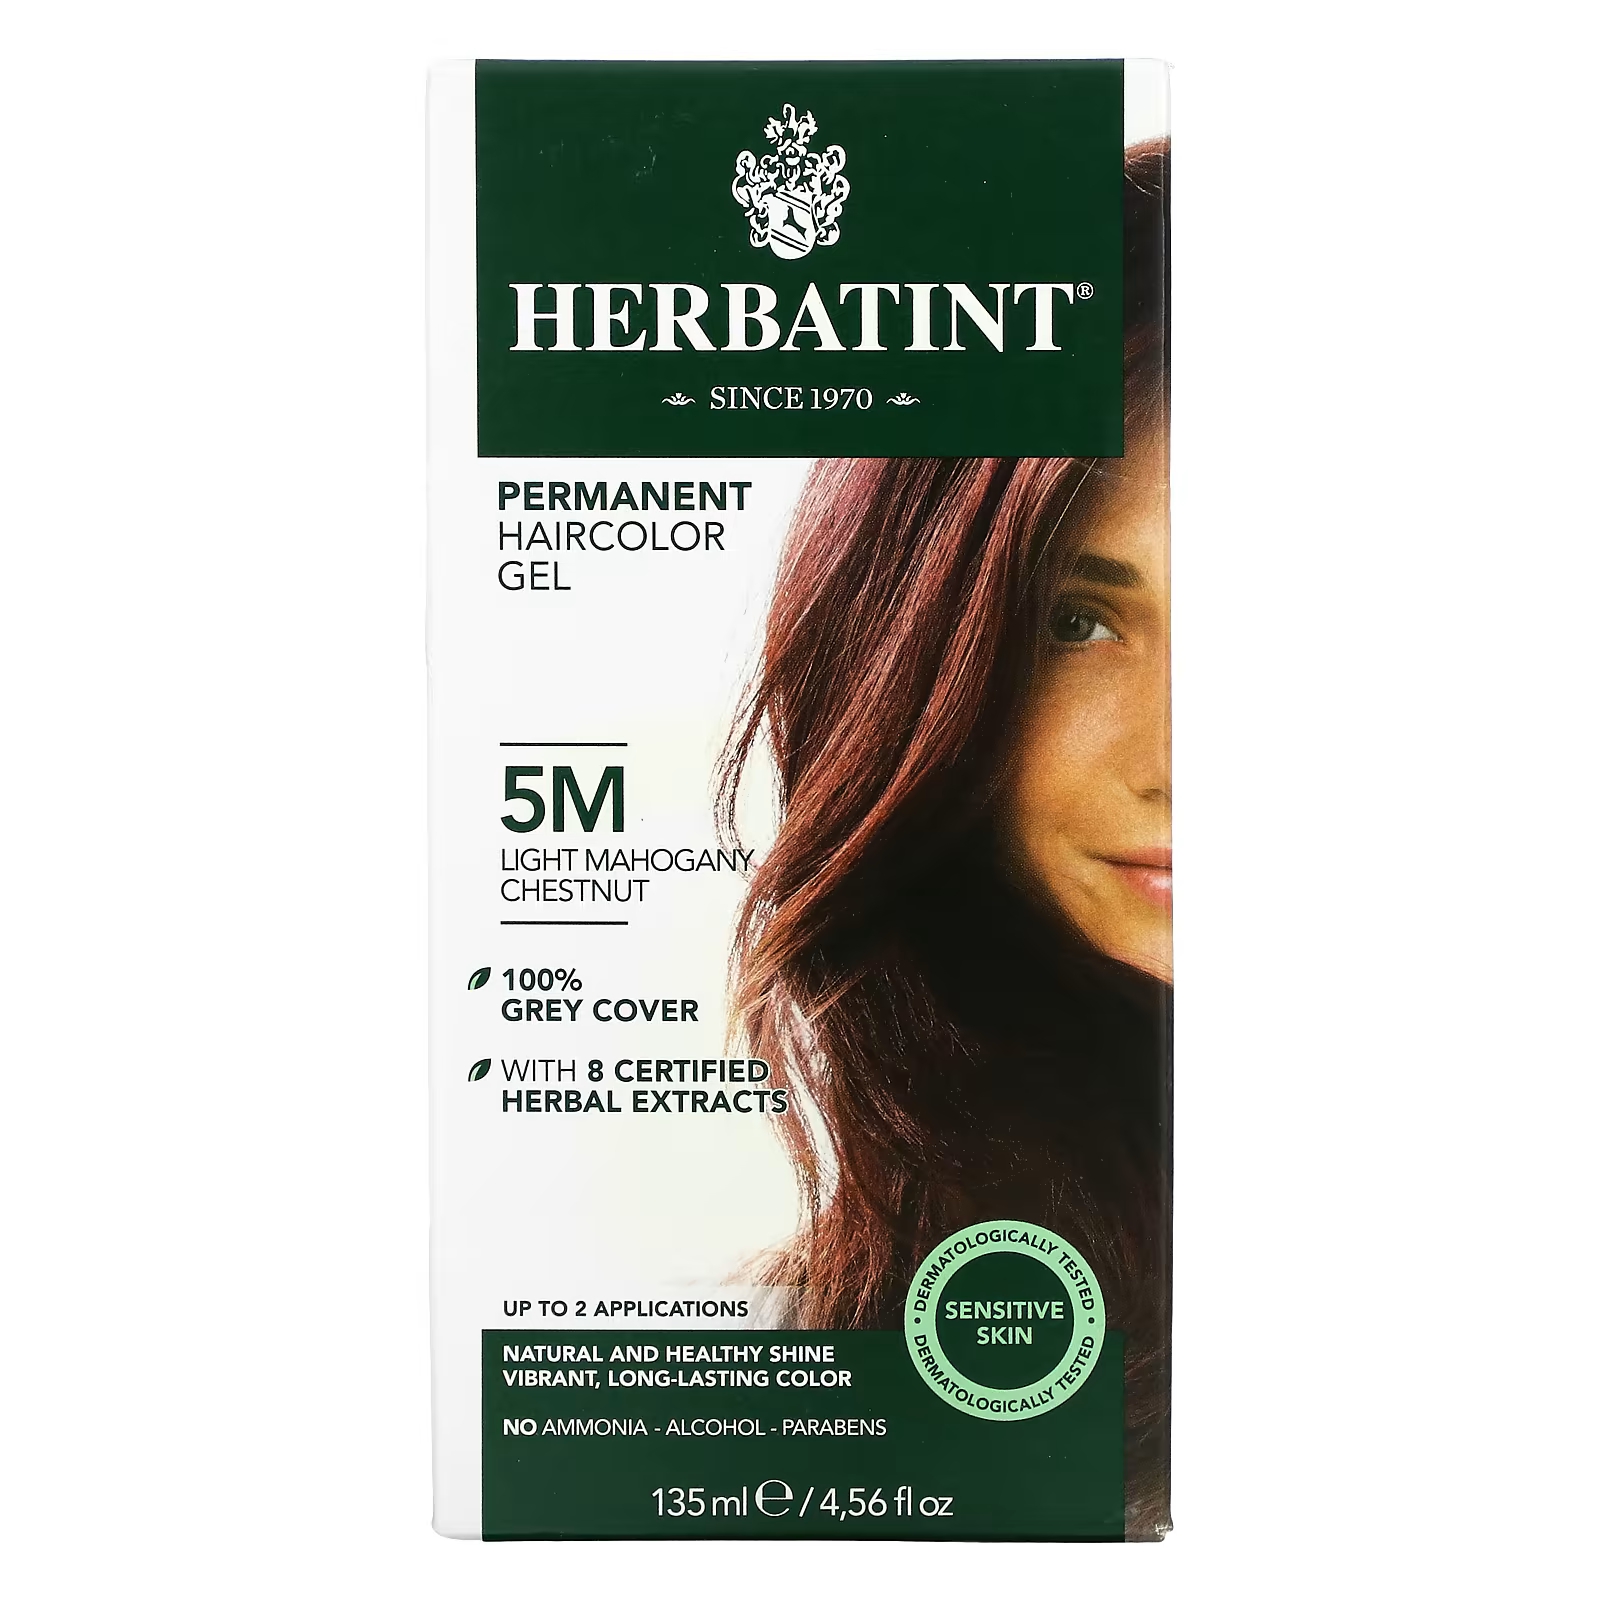 Перманентная гель-краска для волос Herbatint 5M светлый махагони-каштан, 135 мл перманентная гель краска для волос herbatint 5m светлый махагони каштан 135 мл